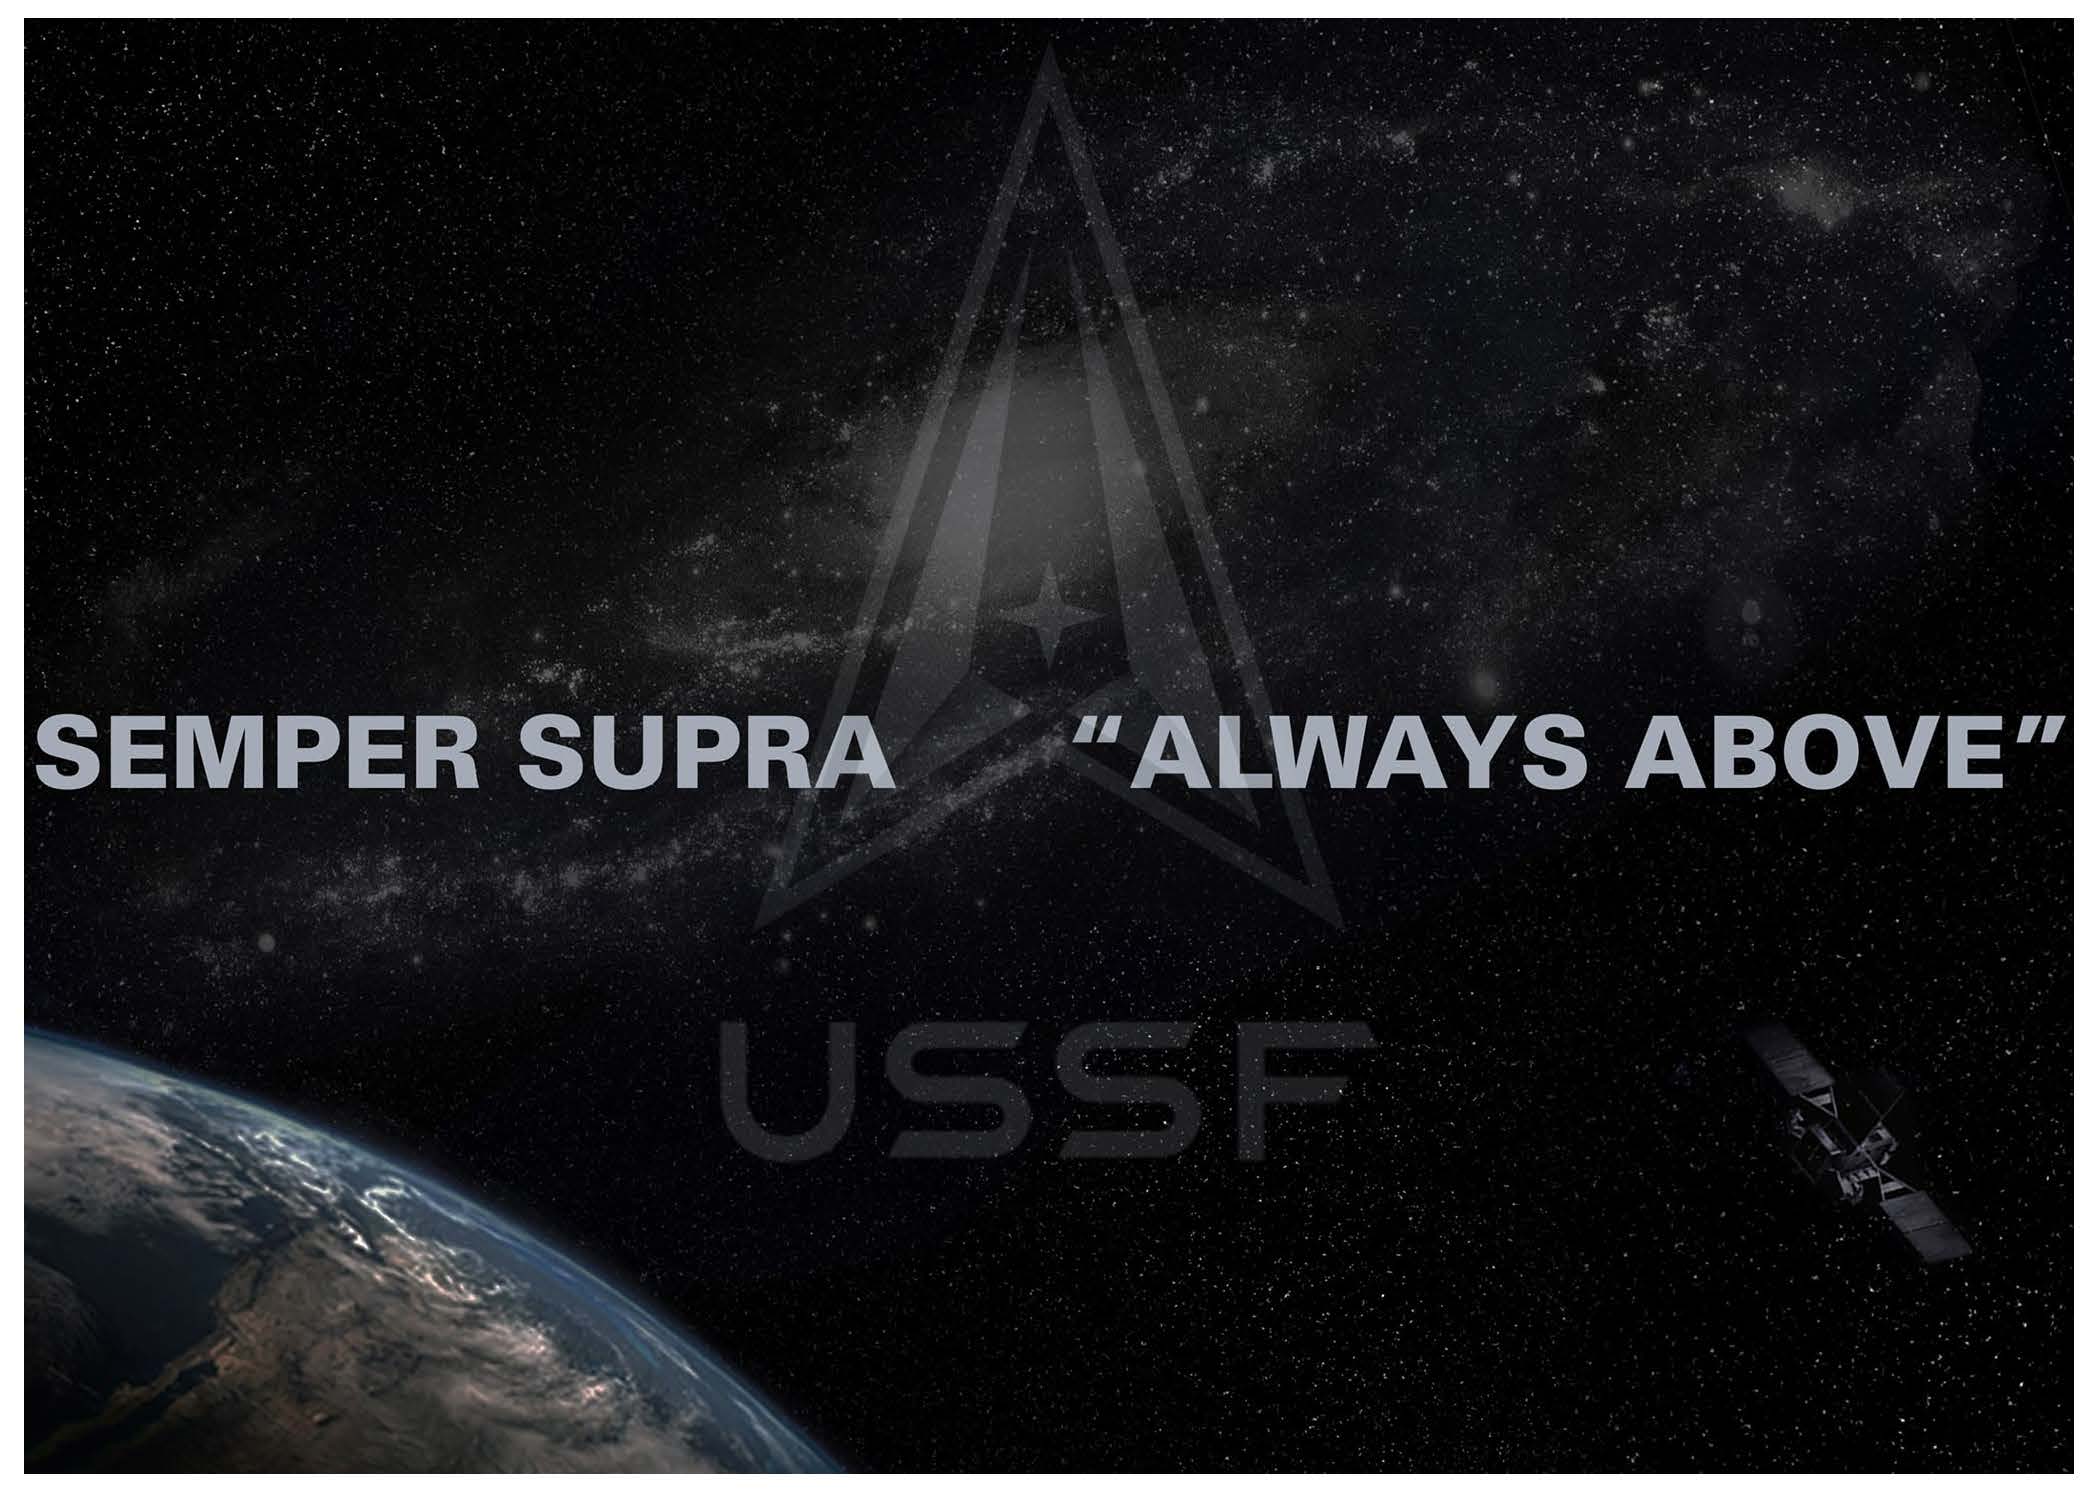 U.S. Space Force Symbol with Semper Supra 